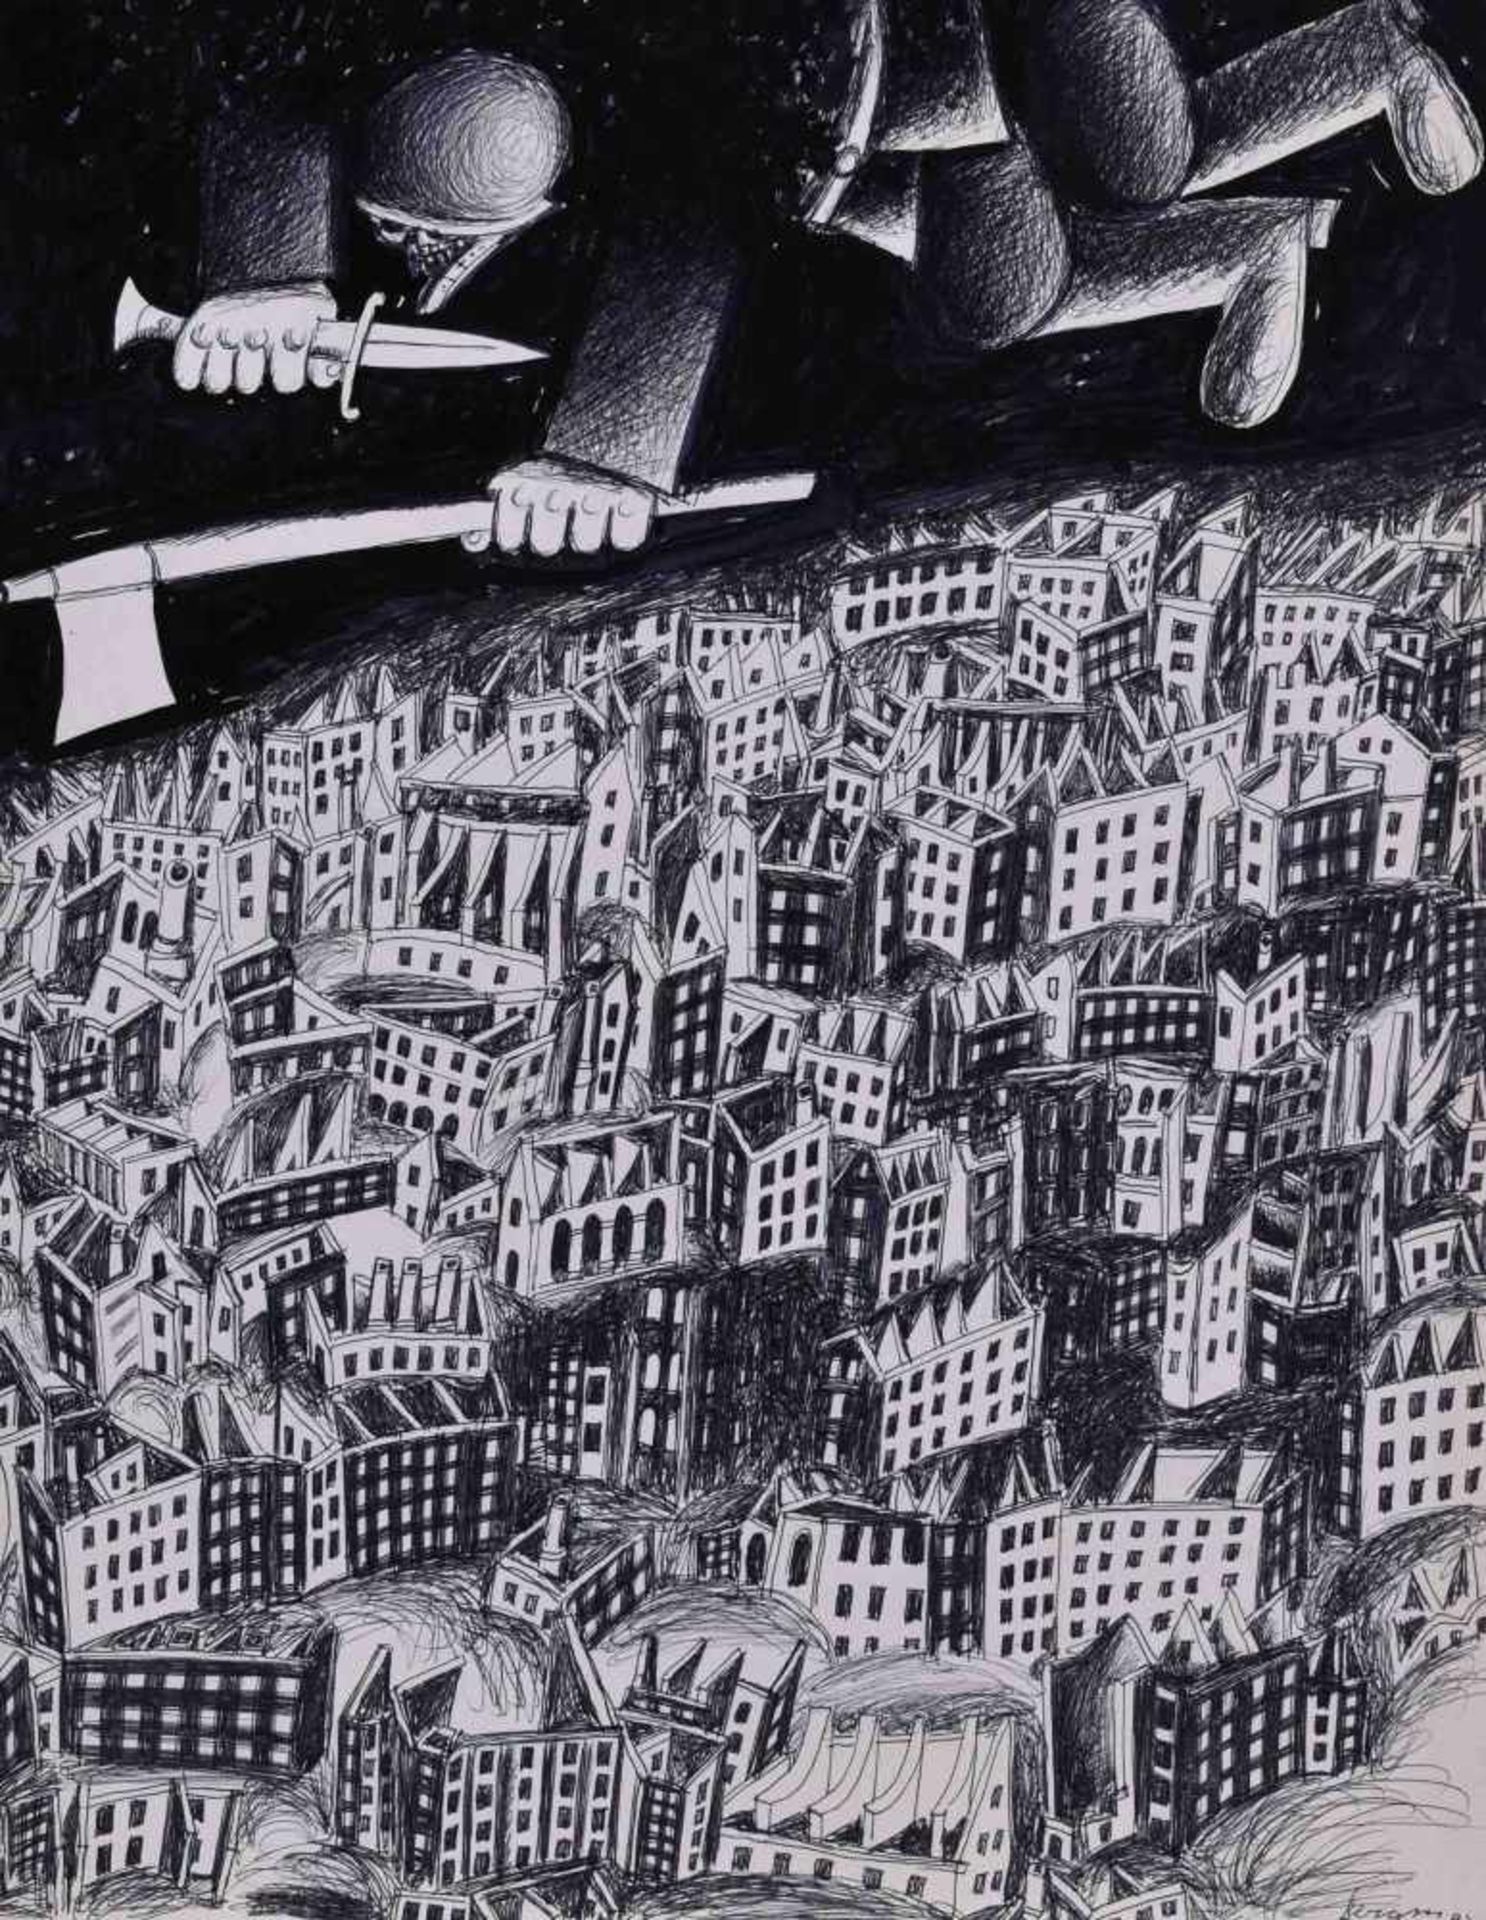 Herbert BERGMANN-HANNAK (1921-2013)"Angst über der Stadt"drawing felt-tip pen / ink, 38 cm x 29.5